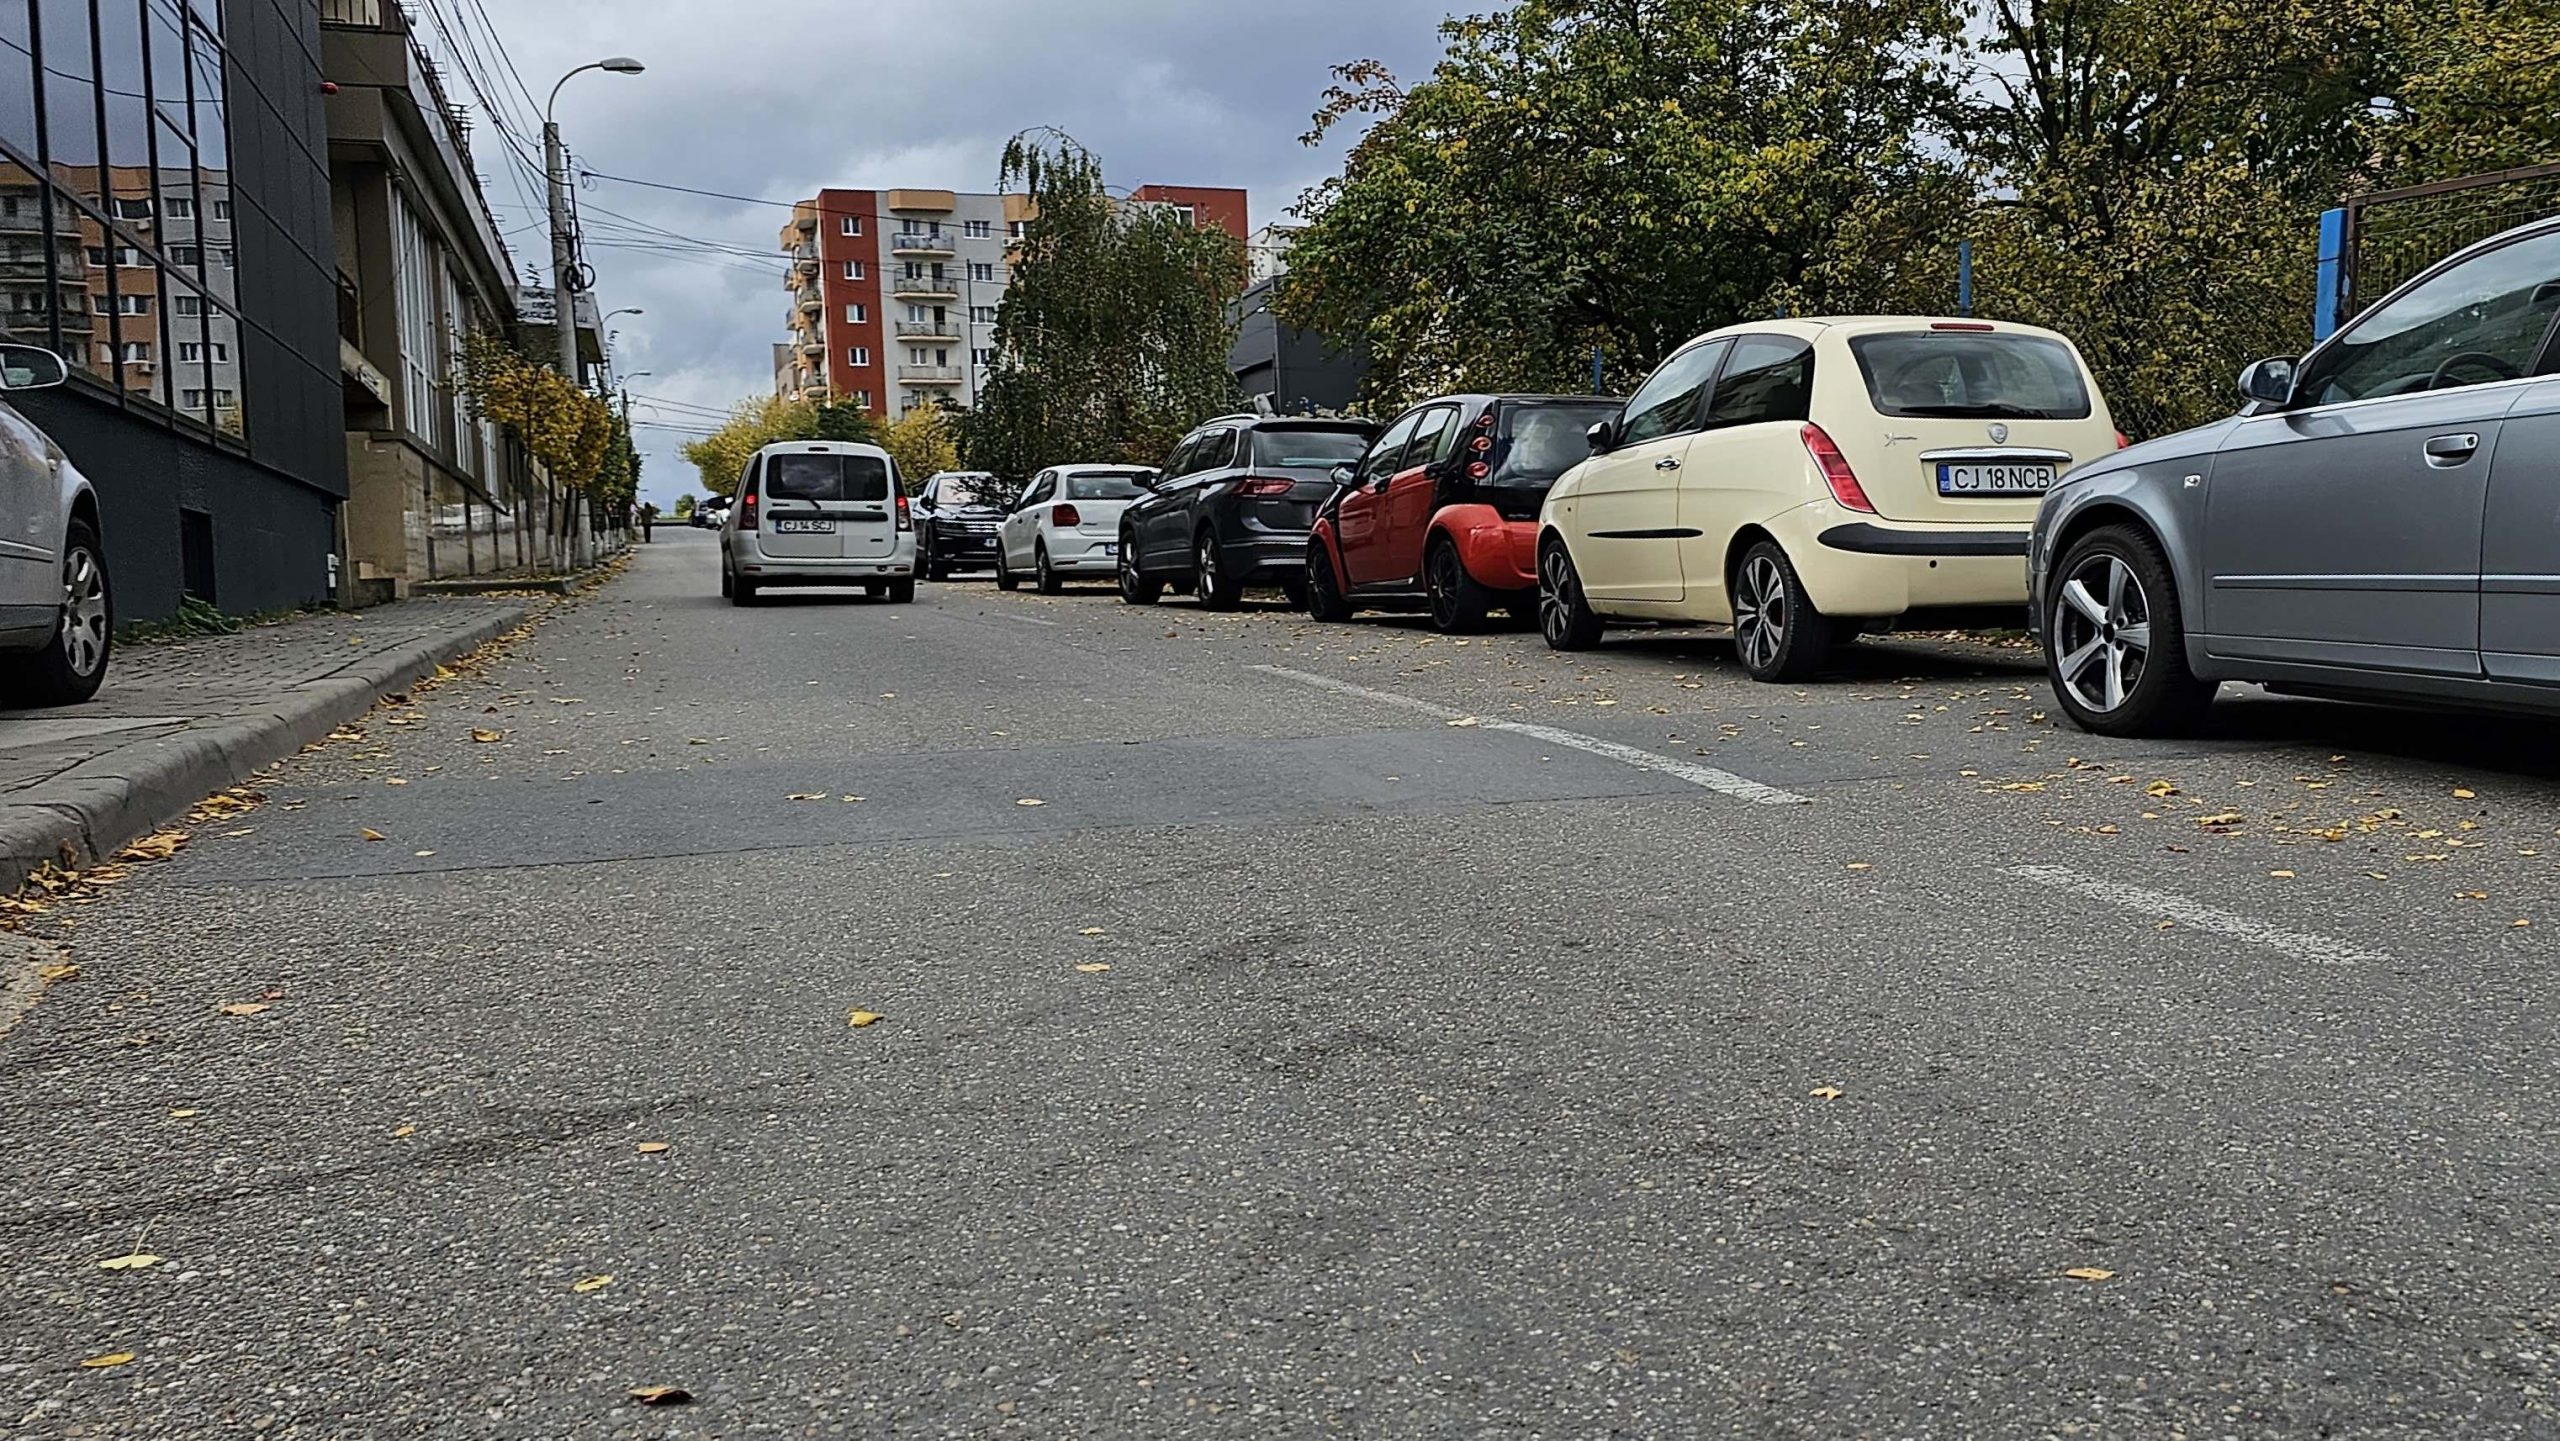 Strada pe care ”locuiește” Poliția Cluj e plină de mașini parcate neregulamentar: ”Nici Primăria, nici Poliția nu își face treaba” - FOTO